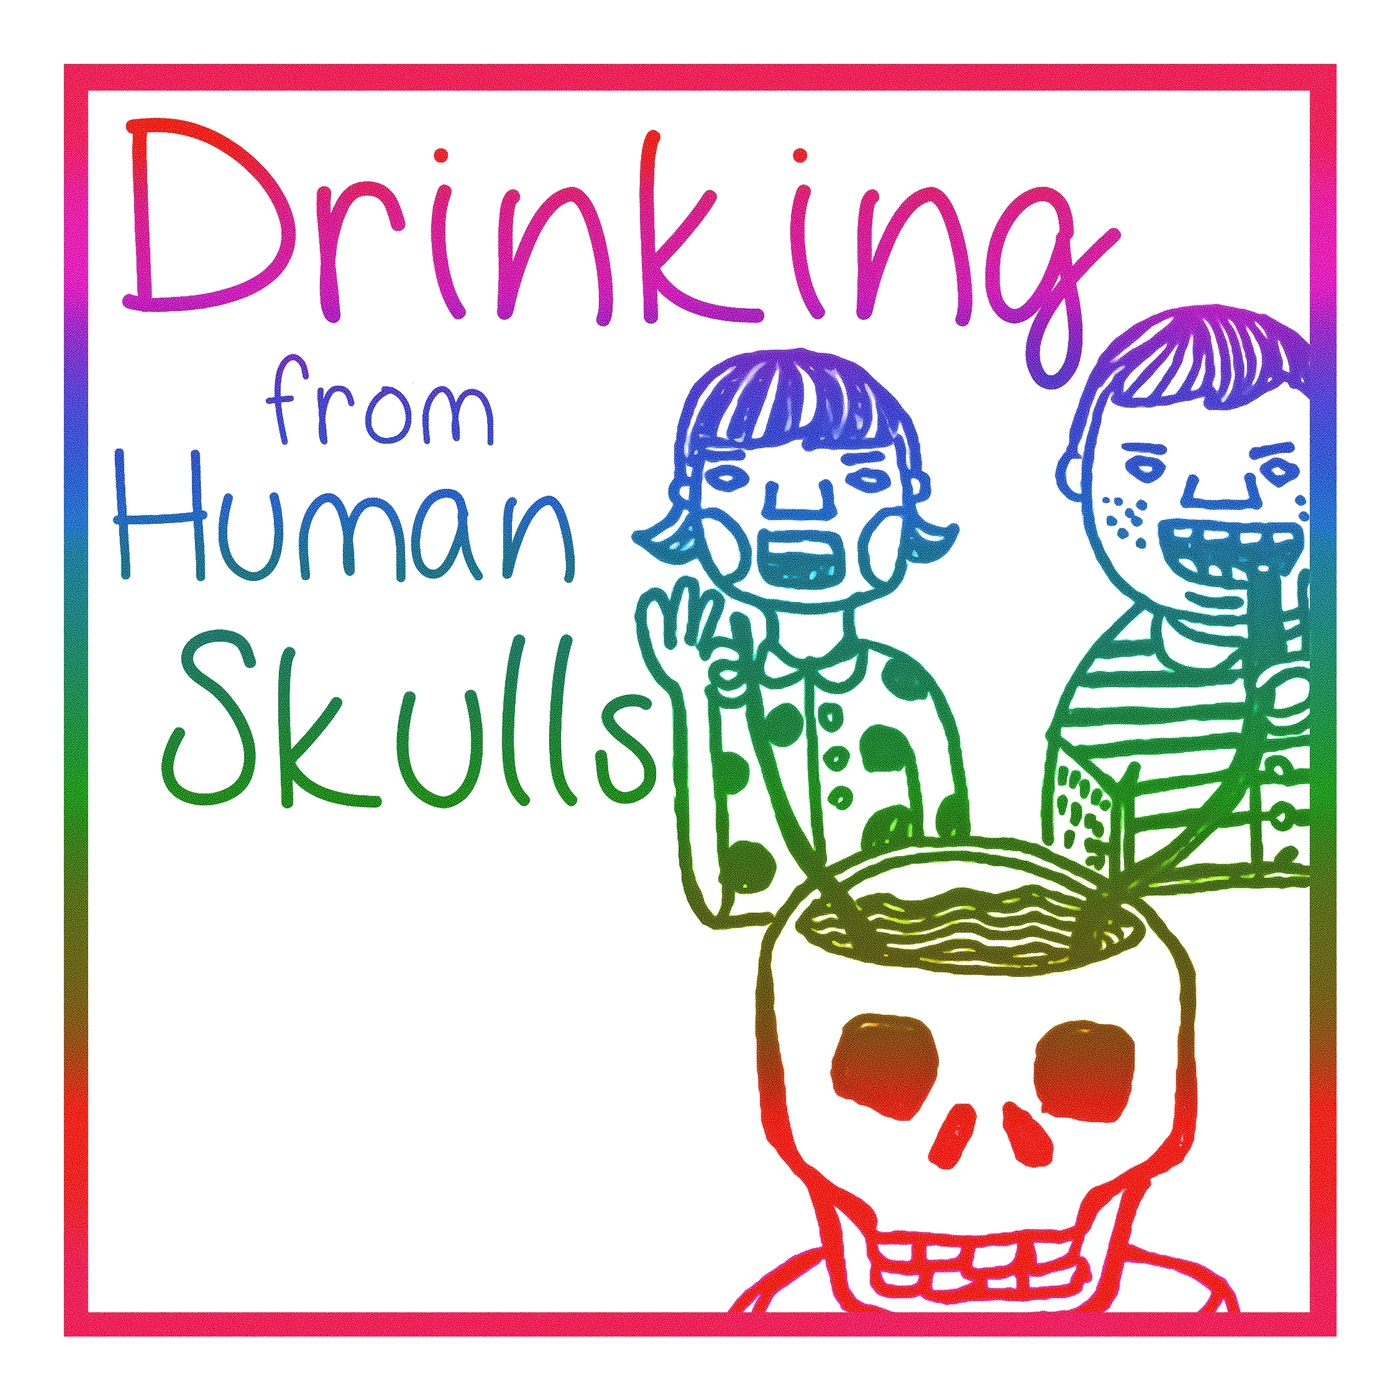 Drinking From Human Skulls